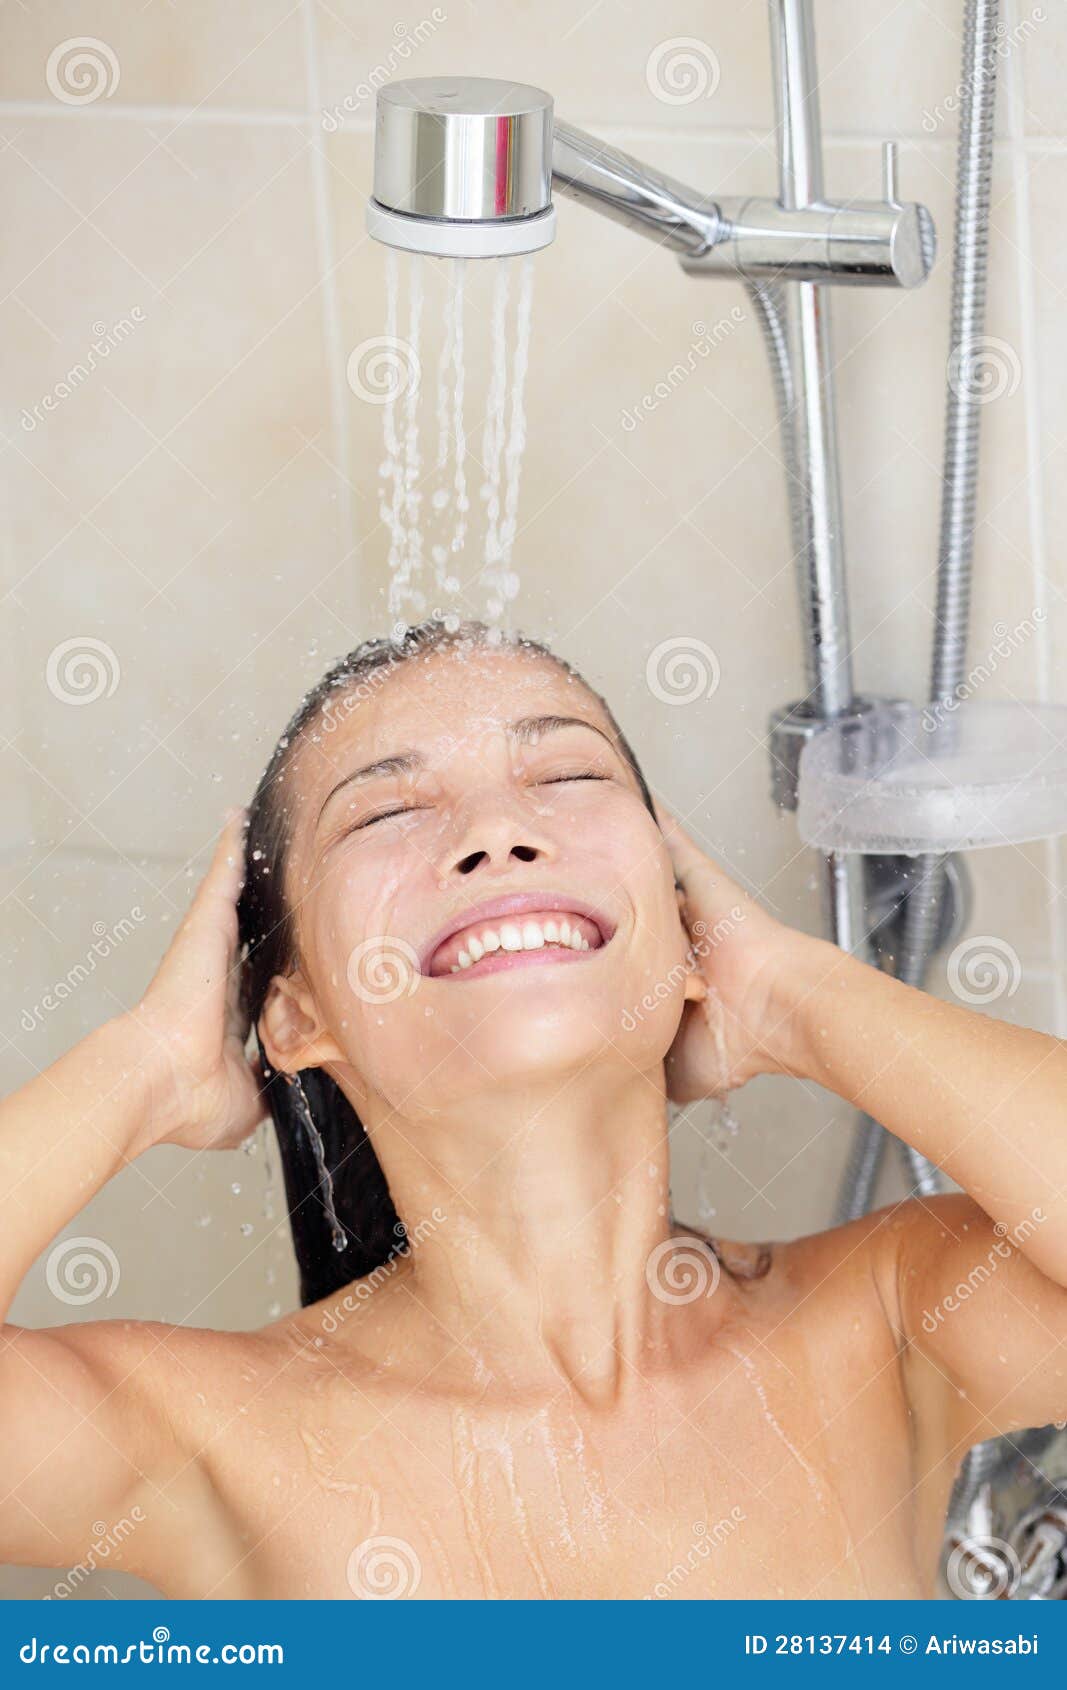 Cabelo de lavagem da mulher que aprecia regando o sorriso feliz com a face sob a água corrente. Modelo chinês caucasiano/asiático da raça misturada bonita em seus anos 20.